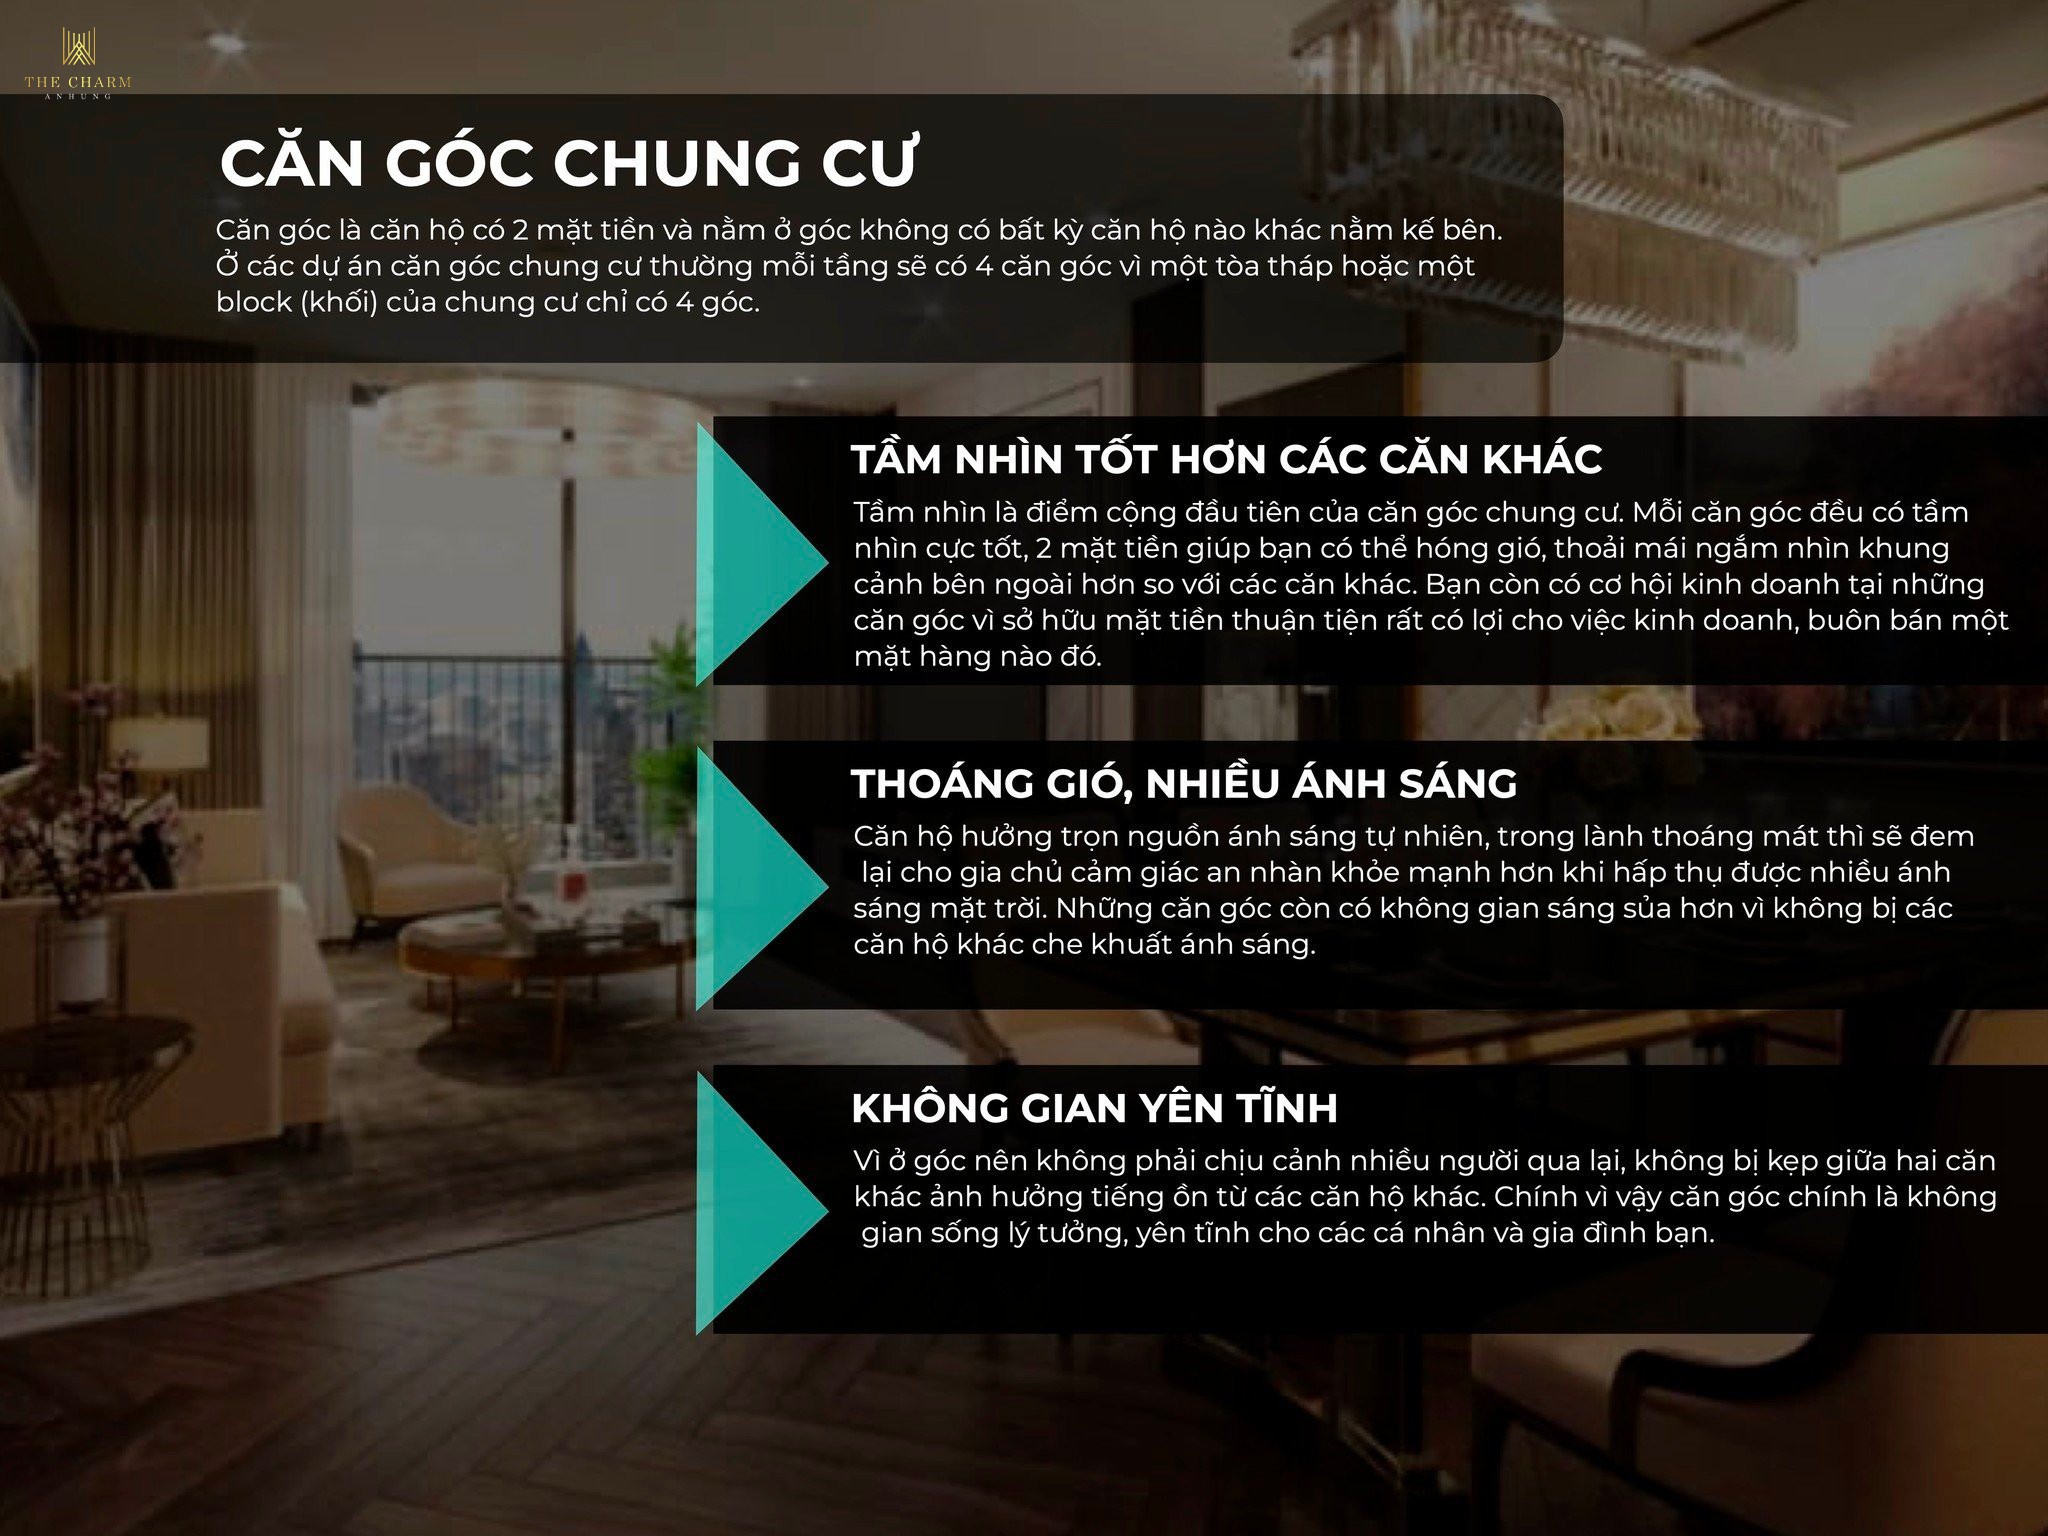 Can Goc Chung Cu The Charm An Hung